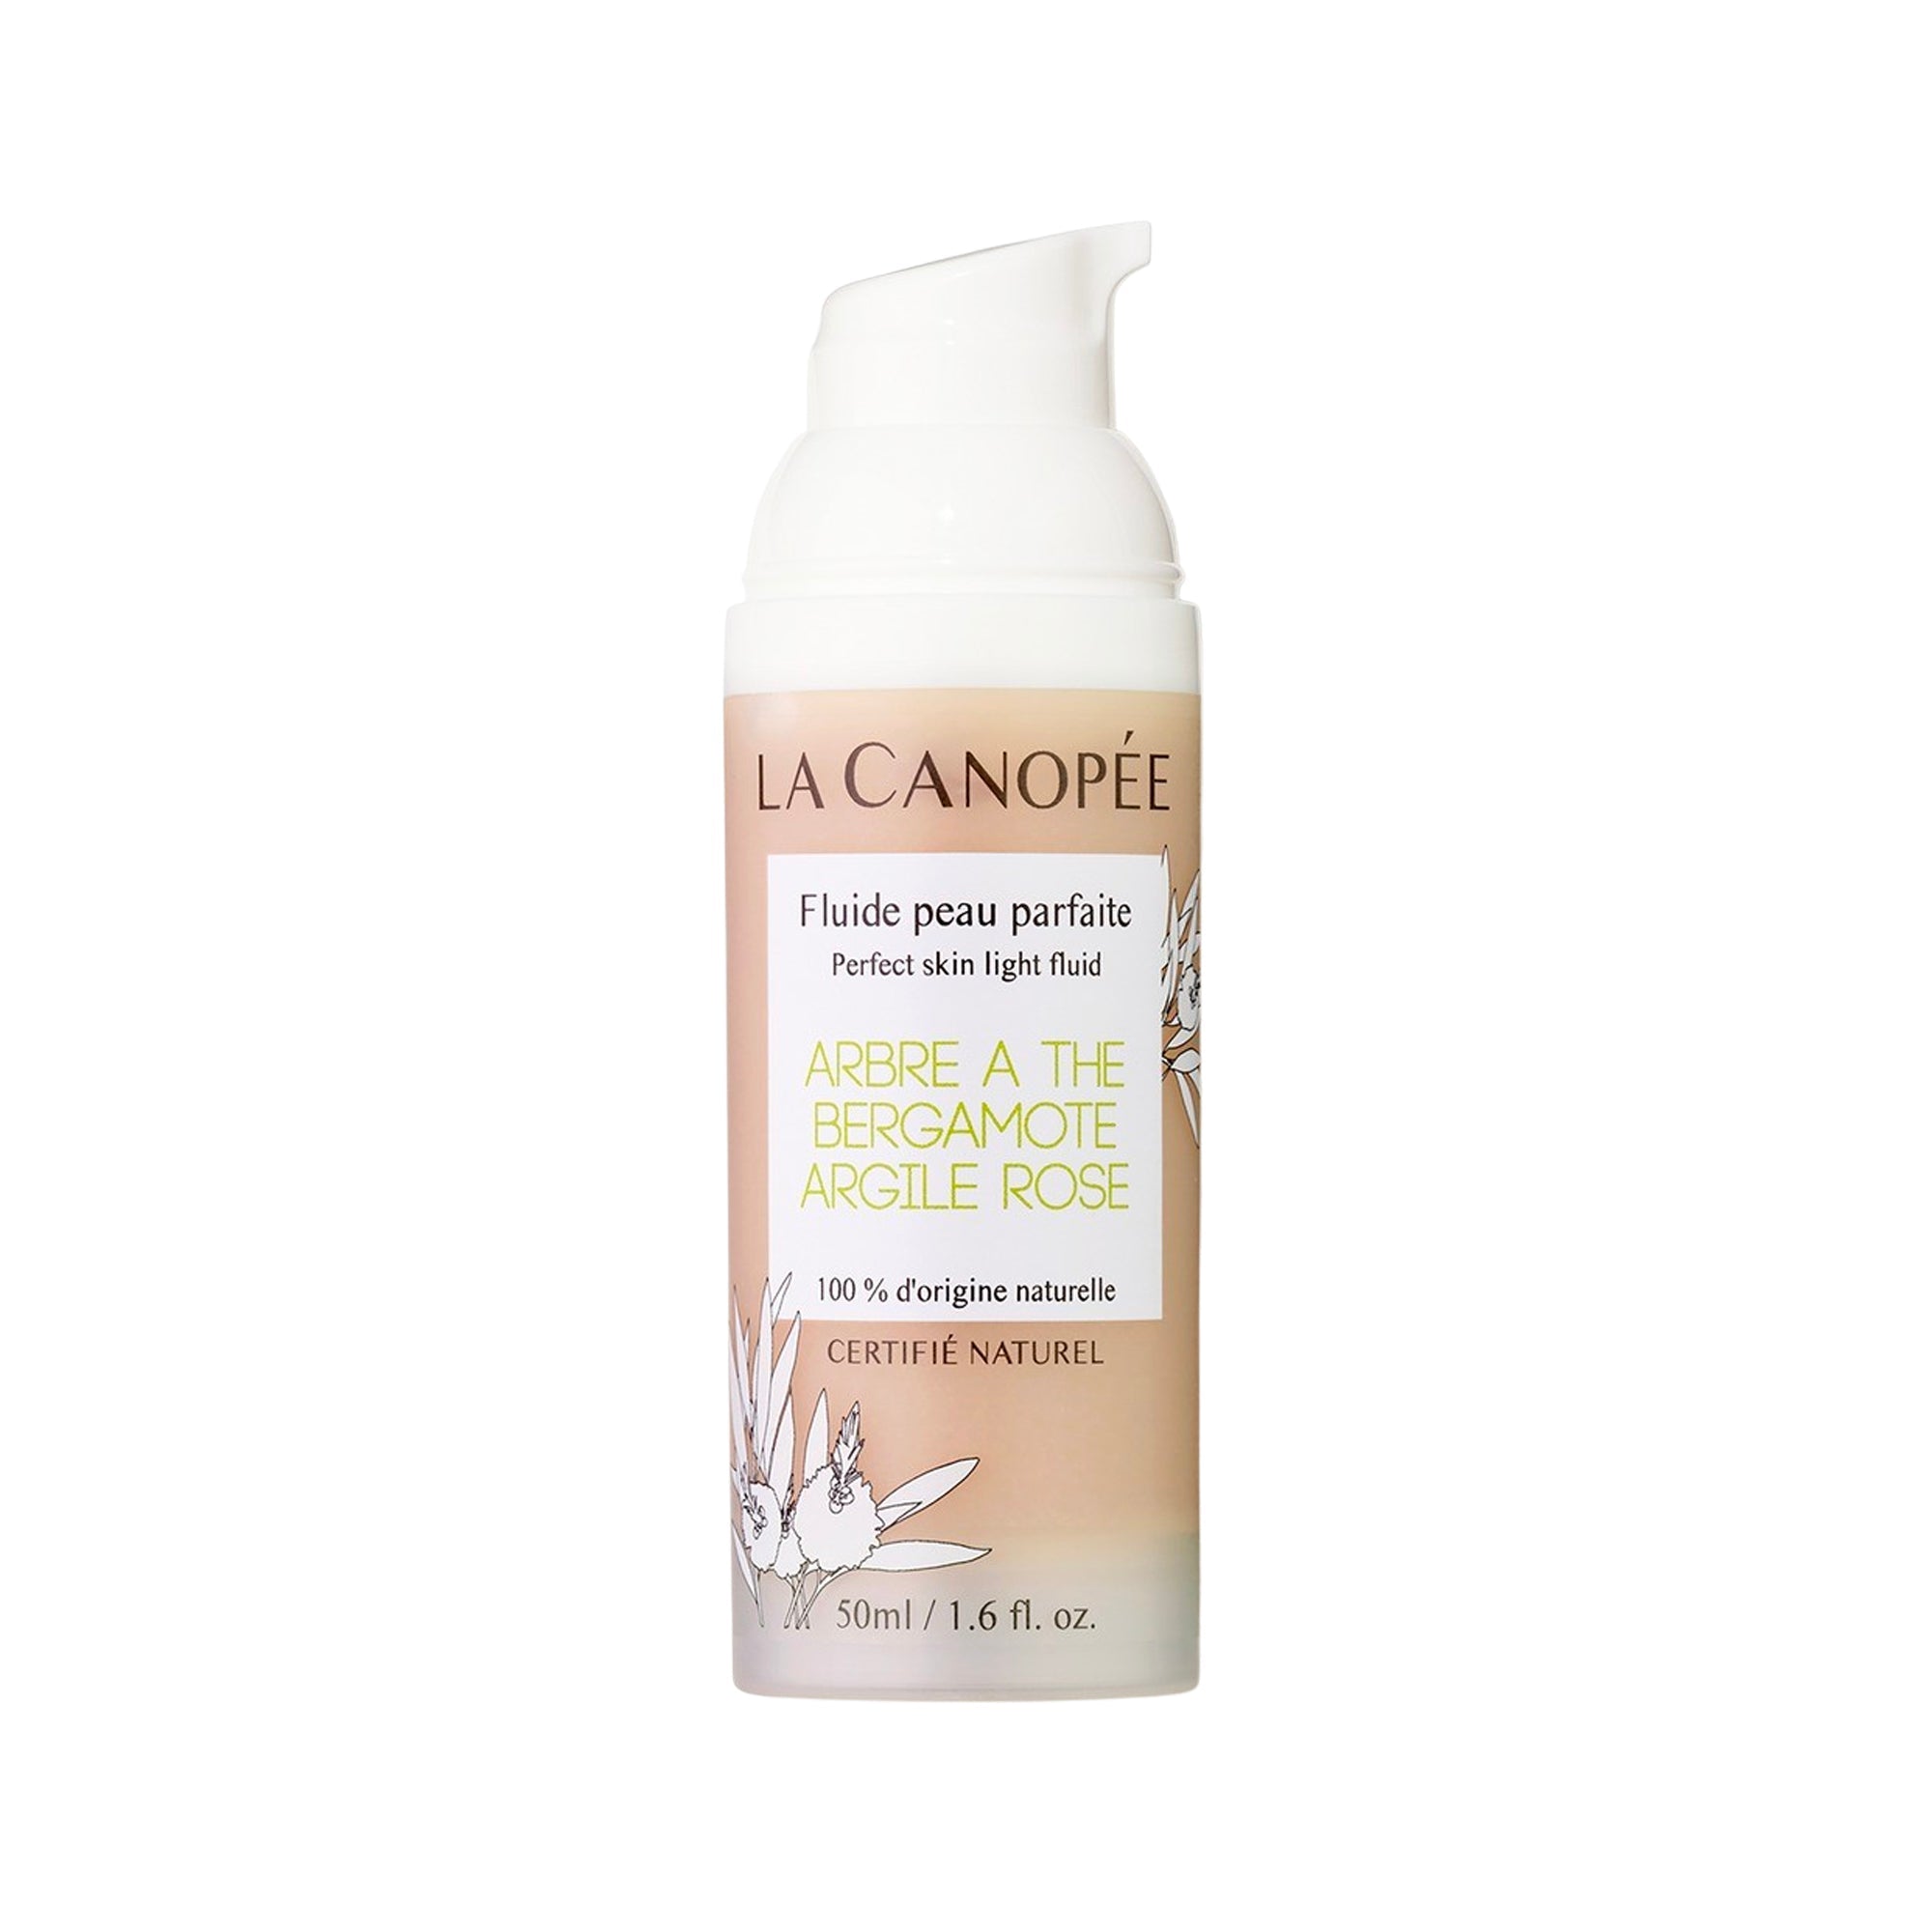 Fluide peau parfaite Perfect skin fluid - La Canopée